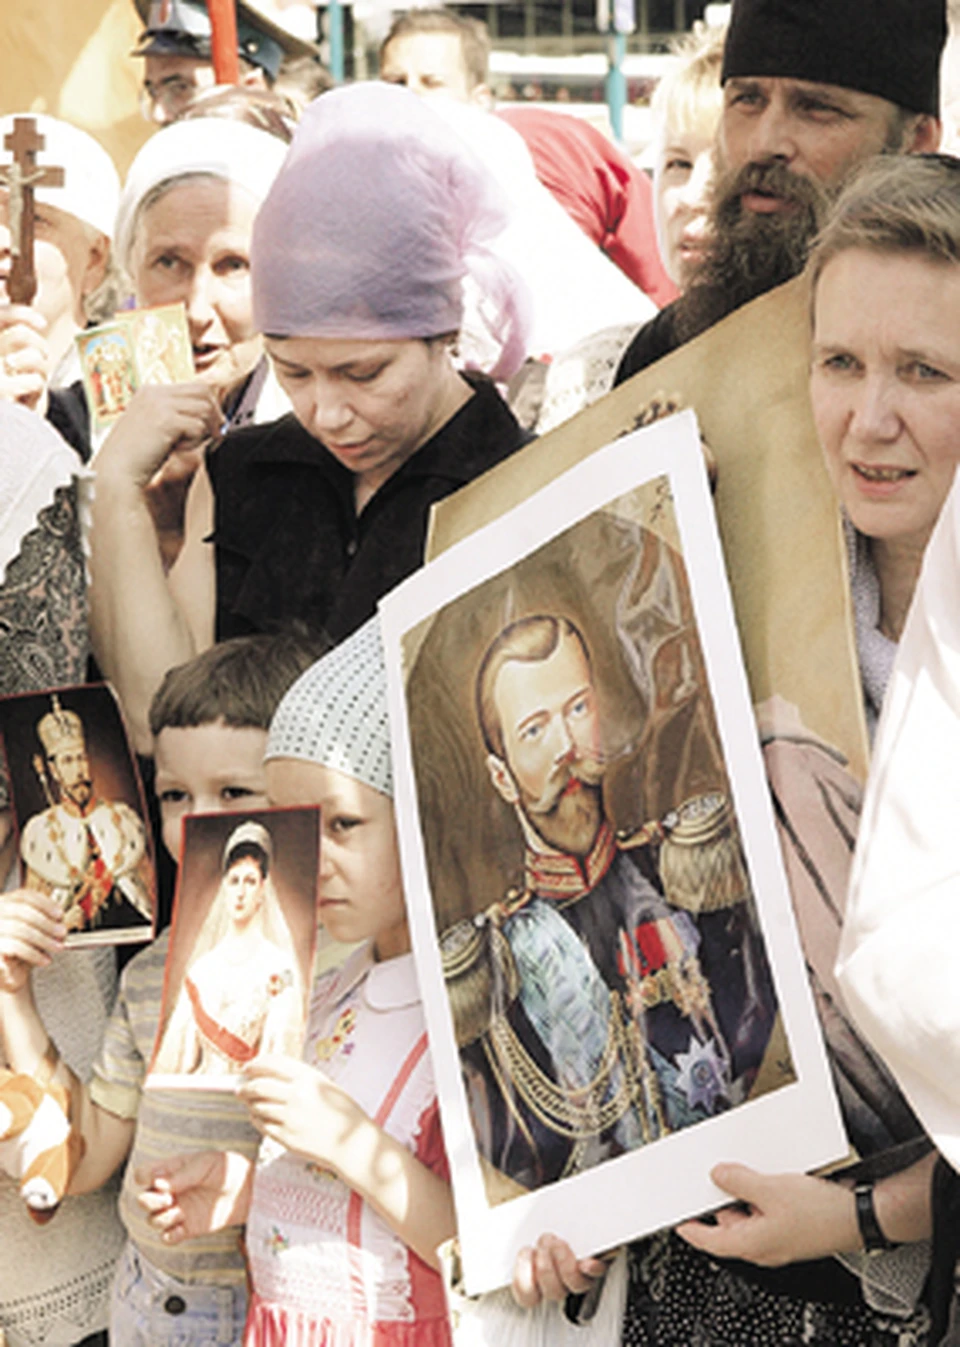 Тысячи россиян молятся мученикам царской семьи. Но вряд ли все они готовы к возврату самодержавия.